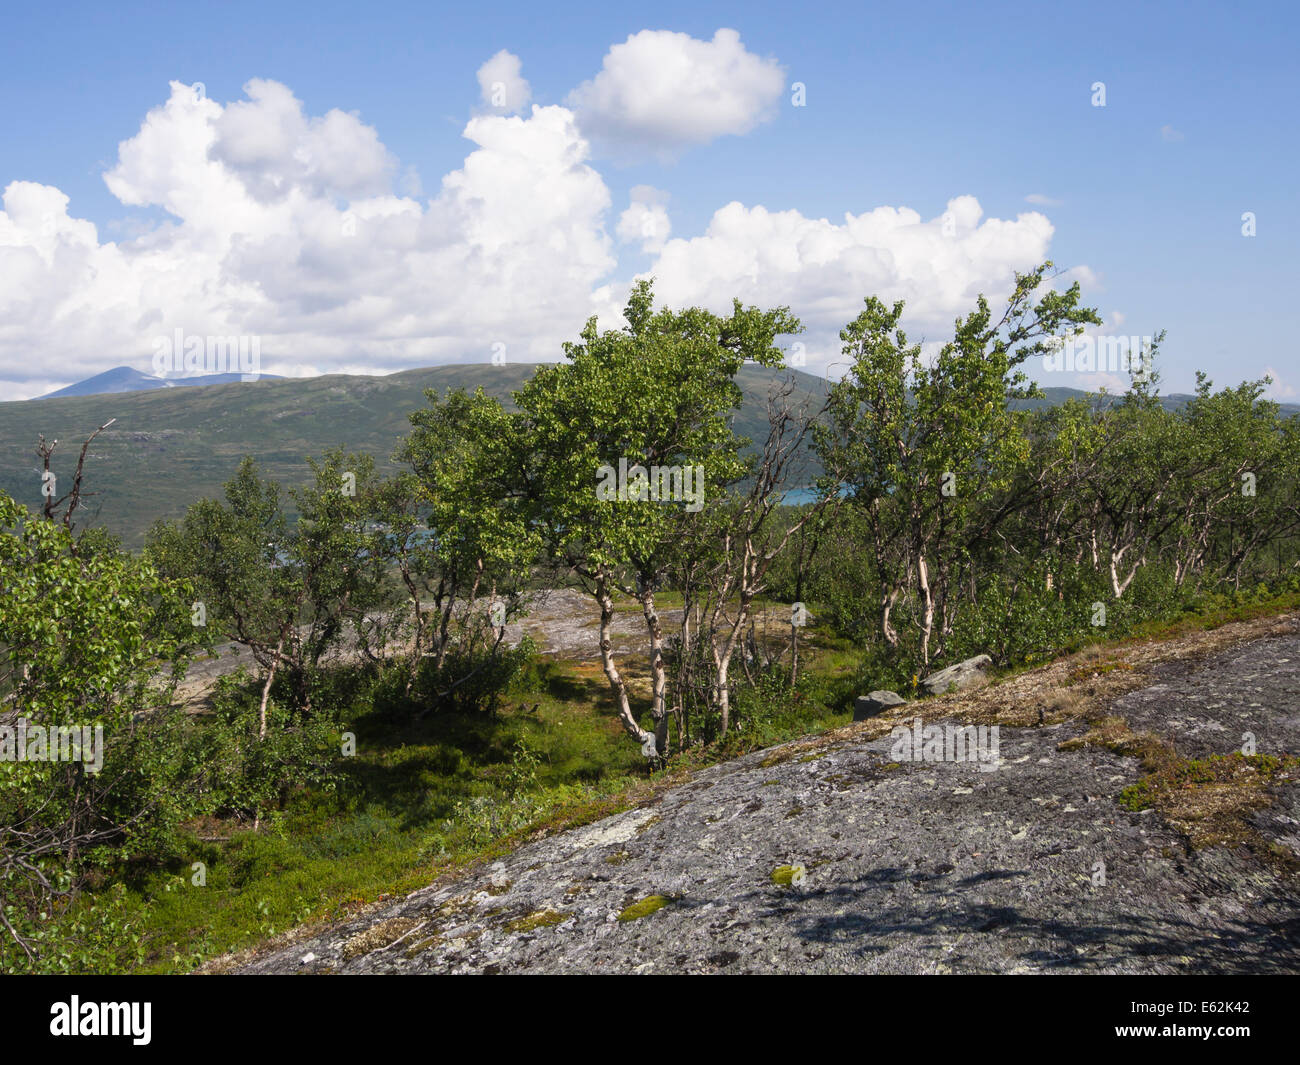 Paysages de montagne, la Norvège Jotunheimen Scandinavie, des chaînes de montagne dans le parc national Banque D'Images